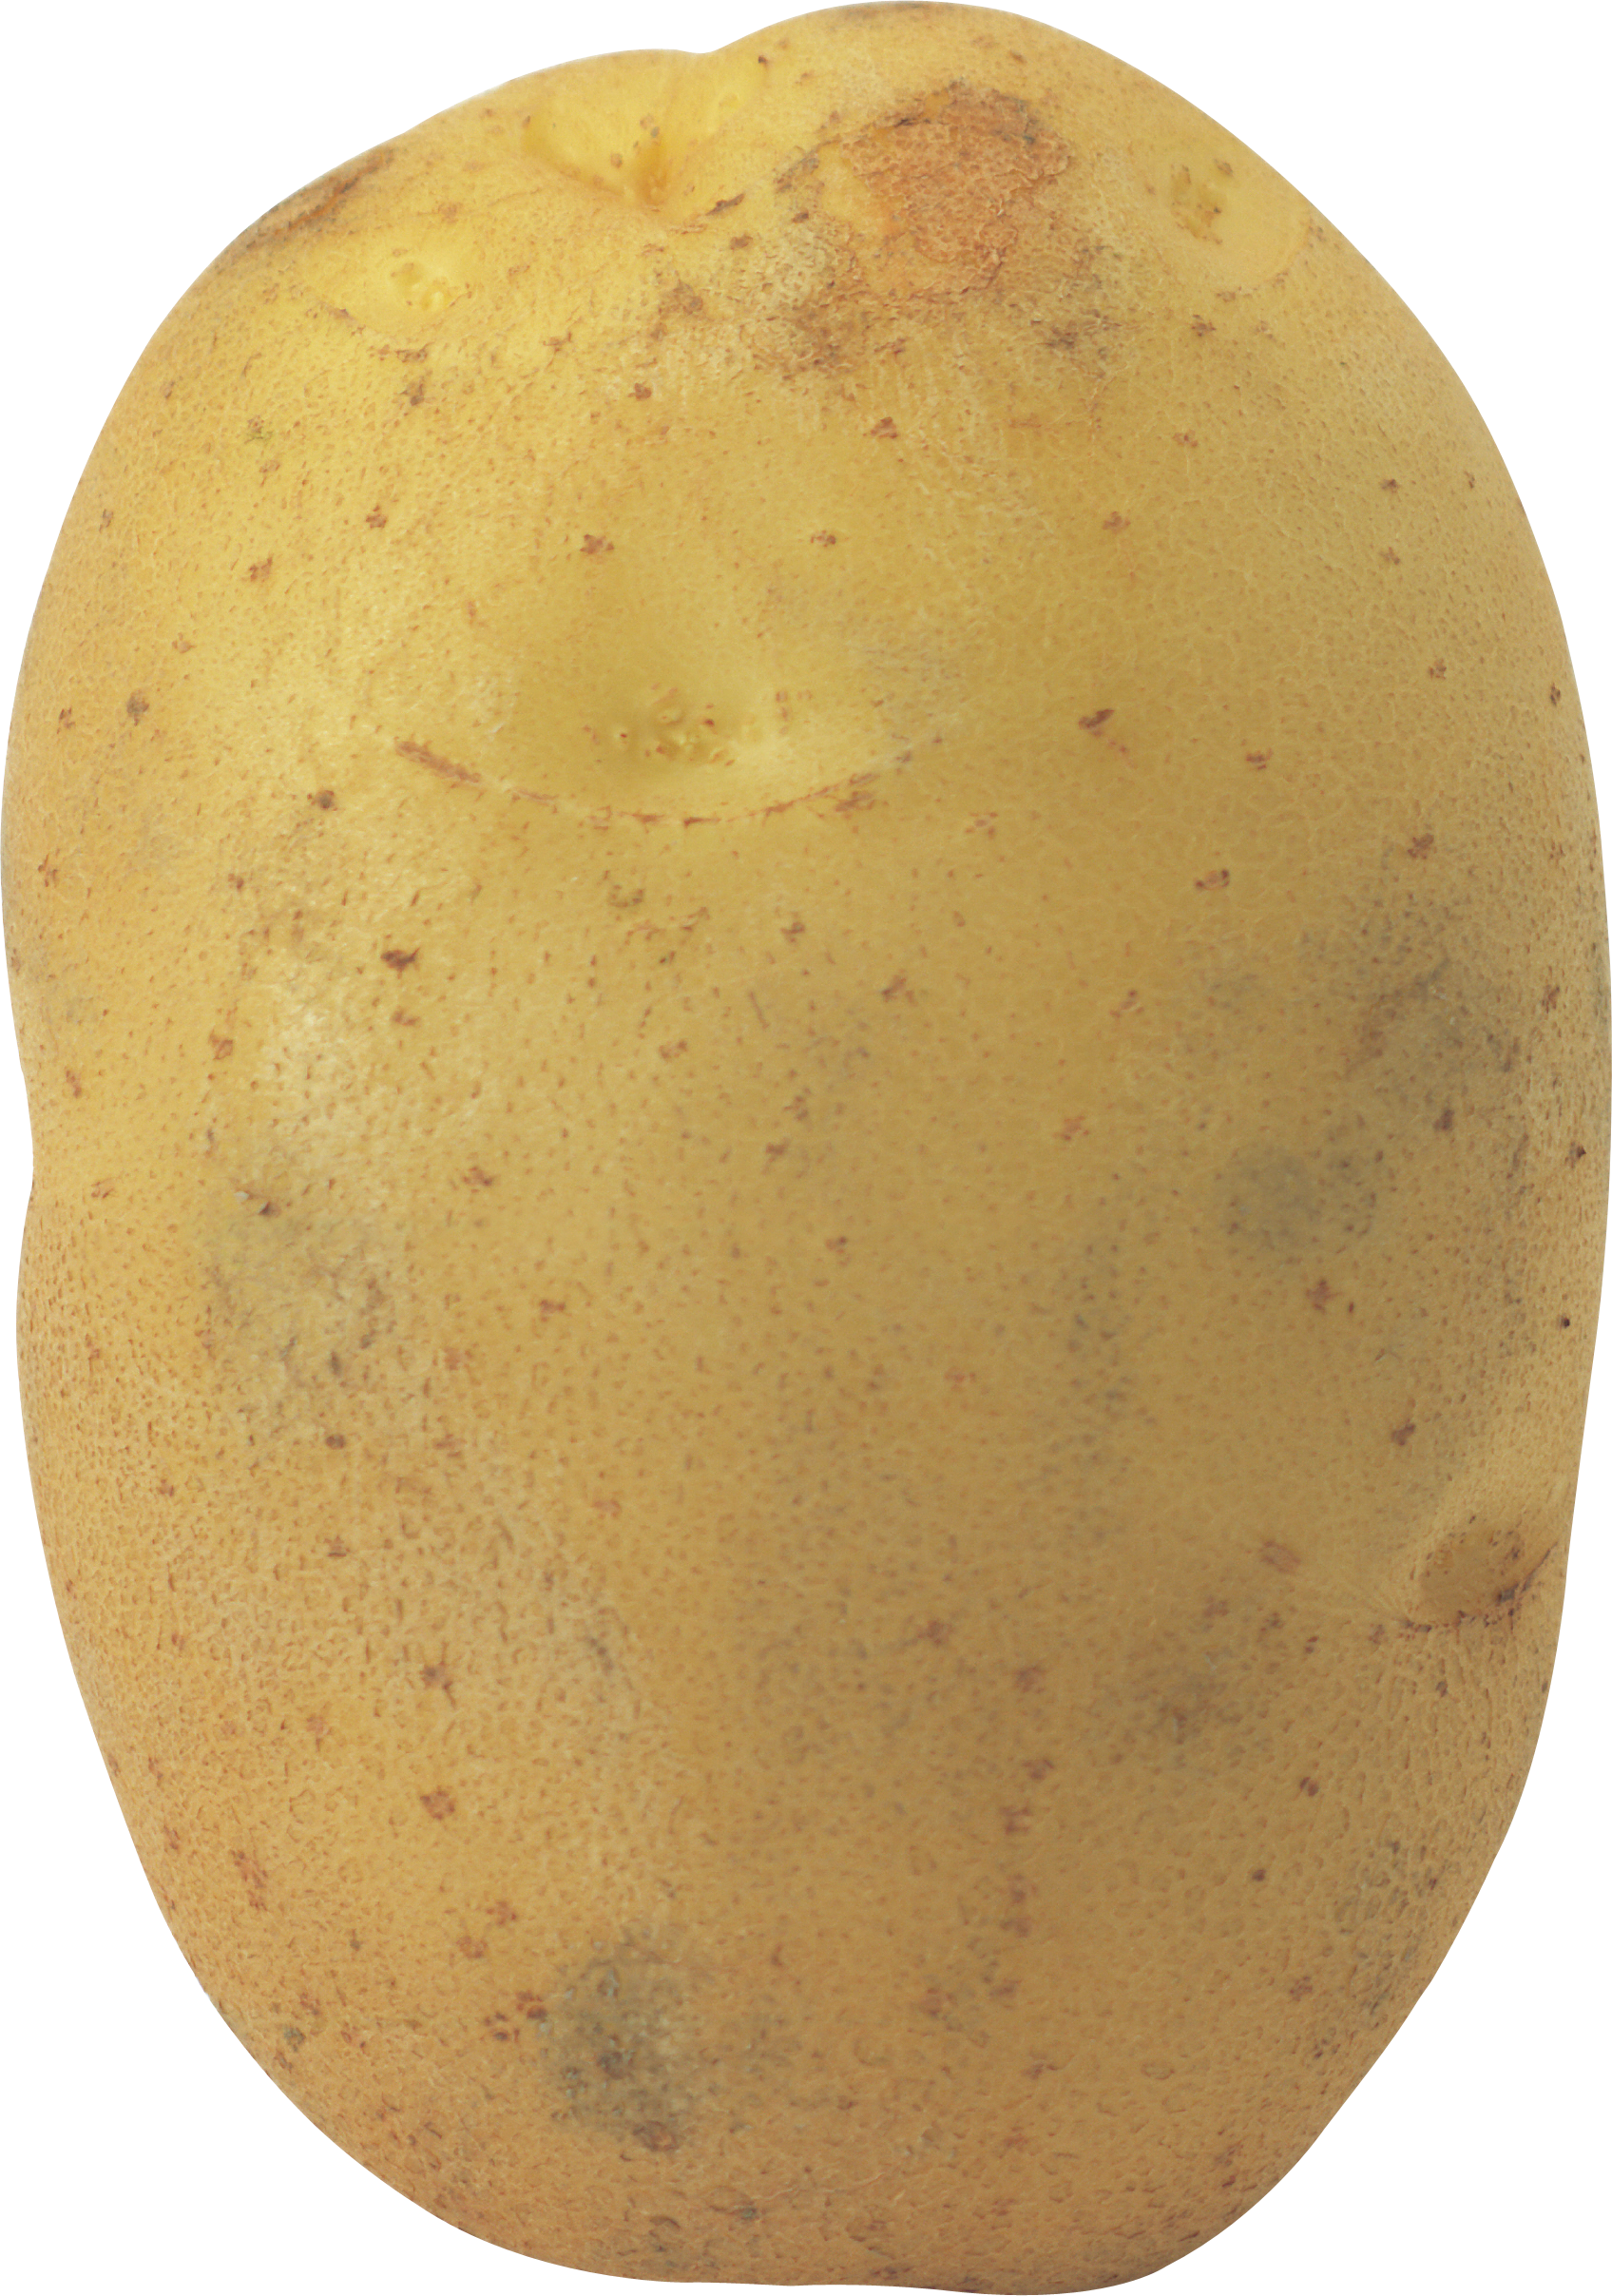 Büyük patatesler